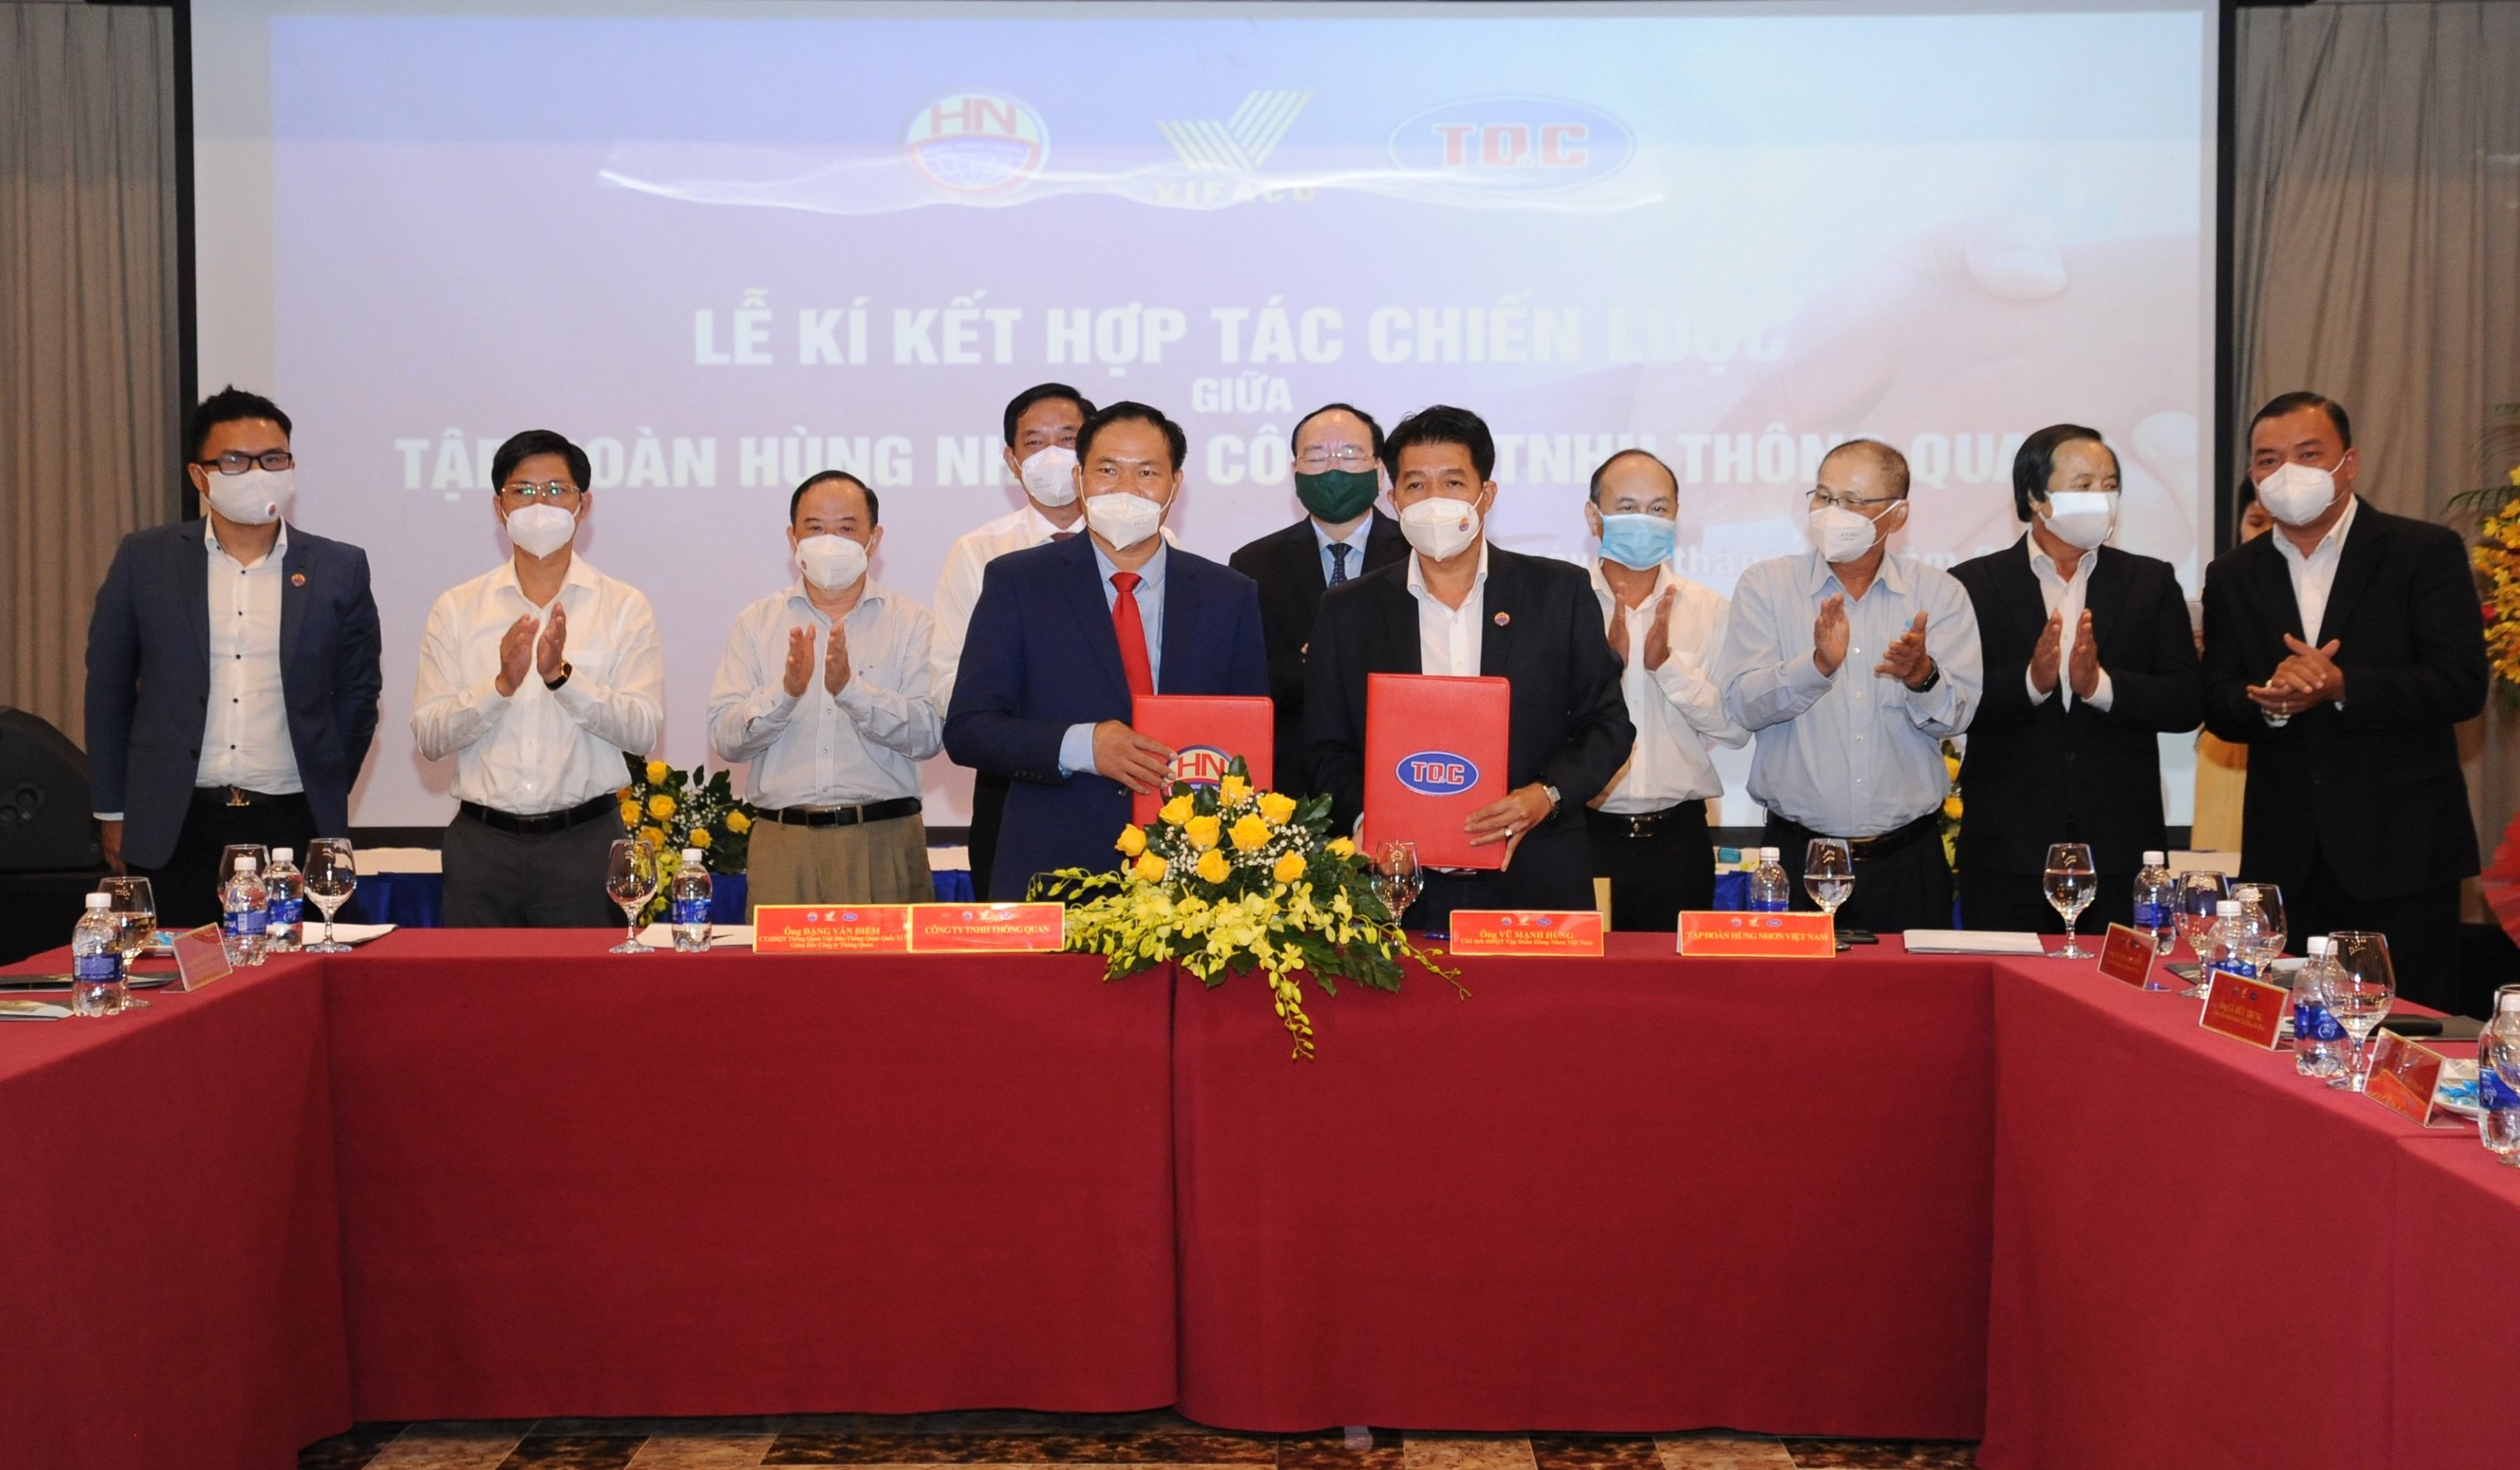 Lễ ký kết chương trình hợp tác chiến lược giữa Tập đoàn Hùng Nhơn và Công ty TNHH Thông Quan trong lĩnh vực logistics diễn ra ngày 5/11 tại Biên Hòa, Đồng Nai.